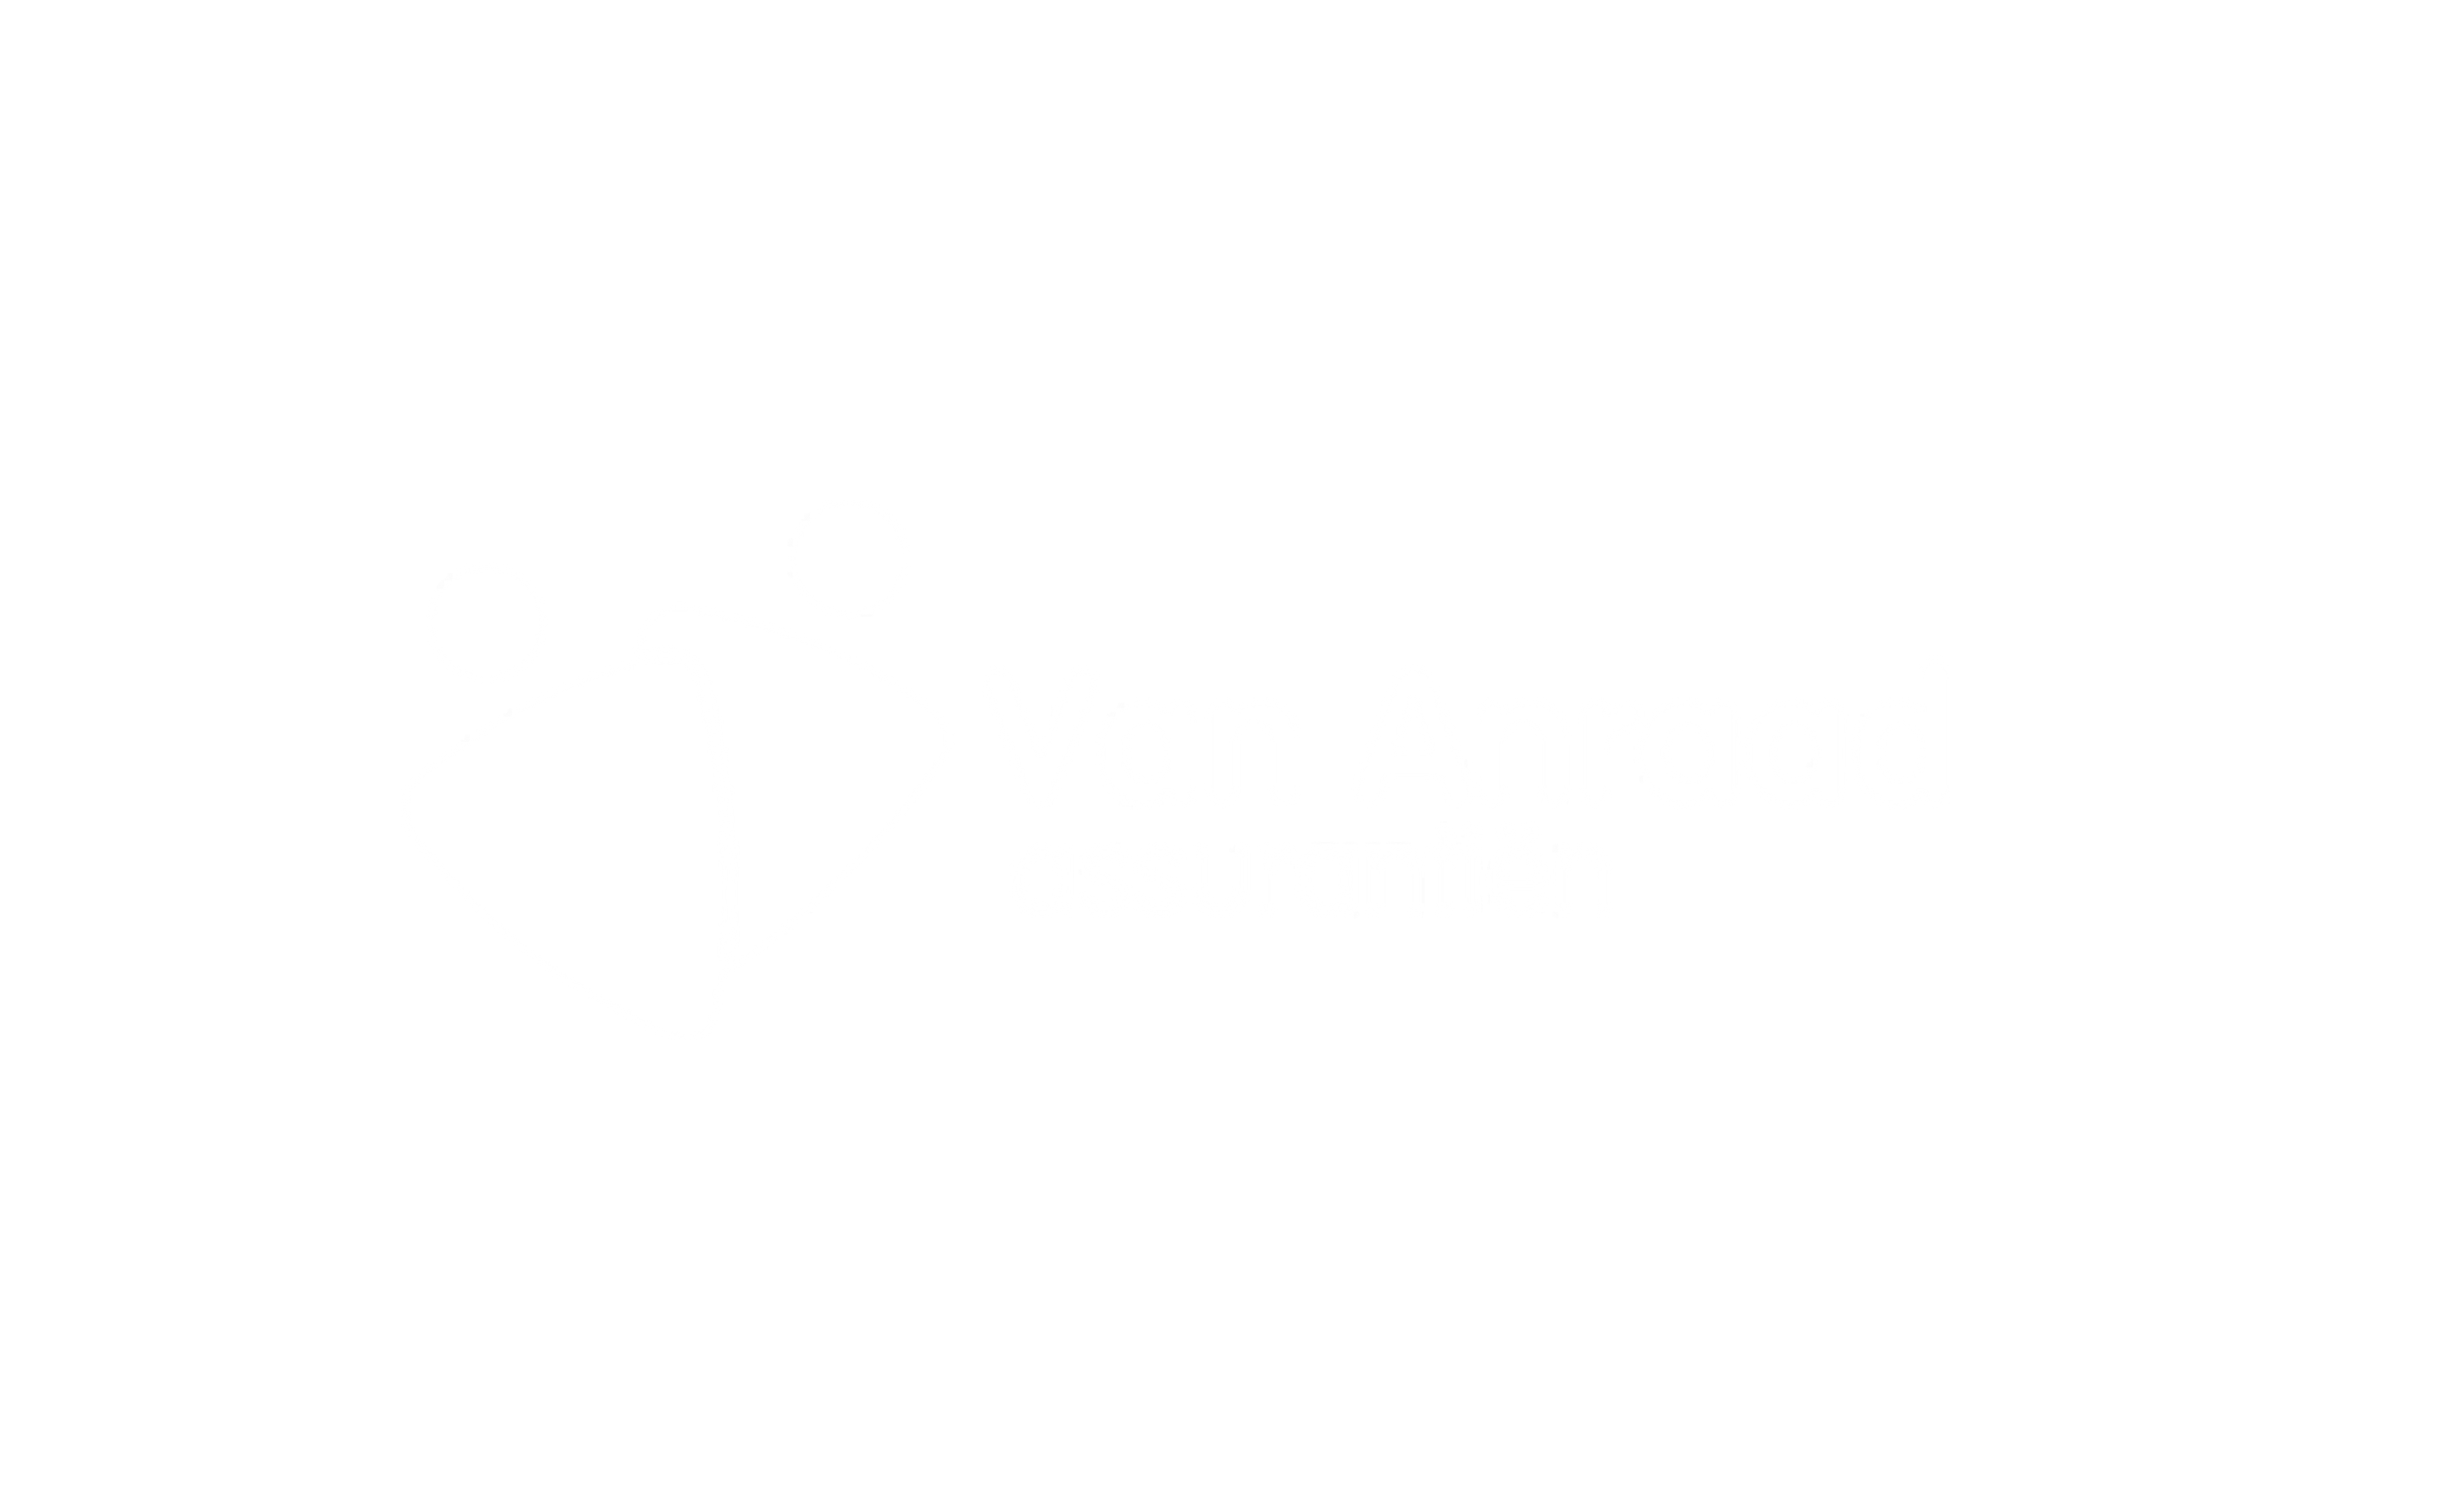 Van Anraad Assurantien verzekeren Logo